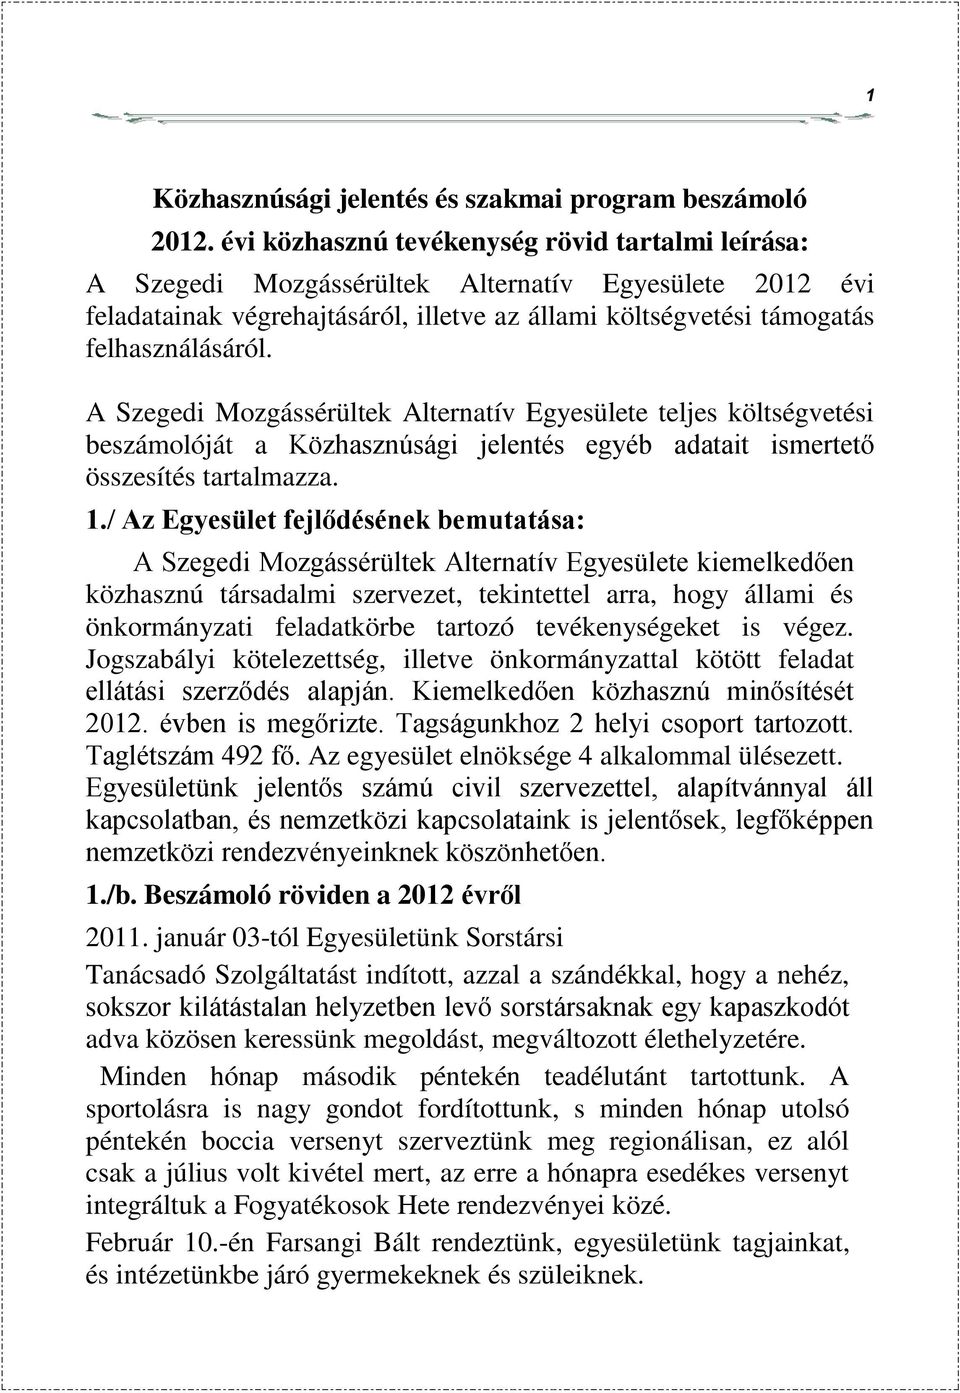 A Szegedi Mozgássérültek Alternatív Egyesülete teljes költségvetési beszámolóját a Közhasznúsági jelentés egyéb adatait ismertető összesítés tartalmazza. 1.